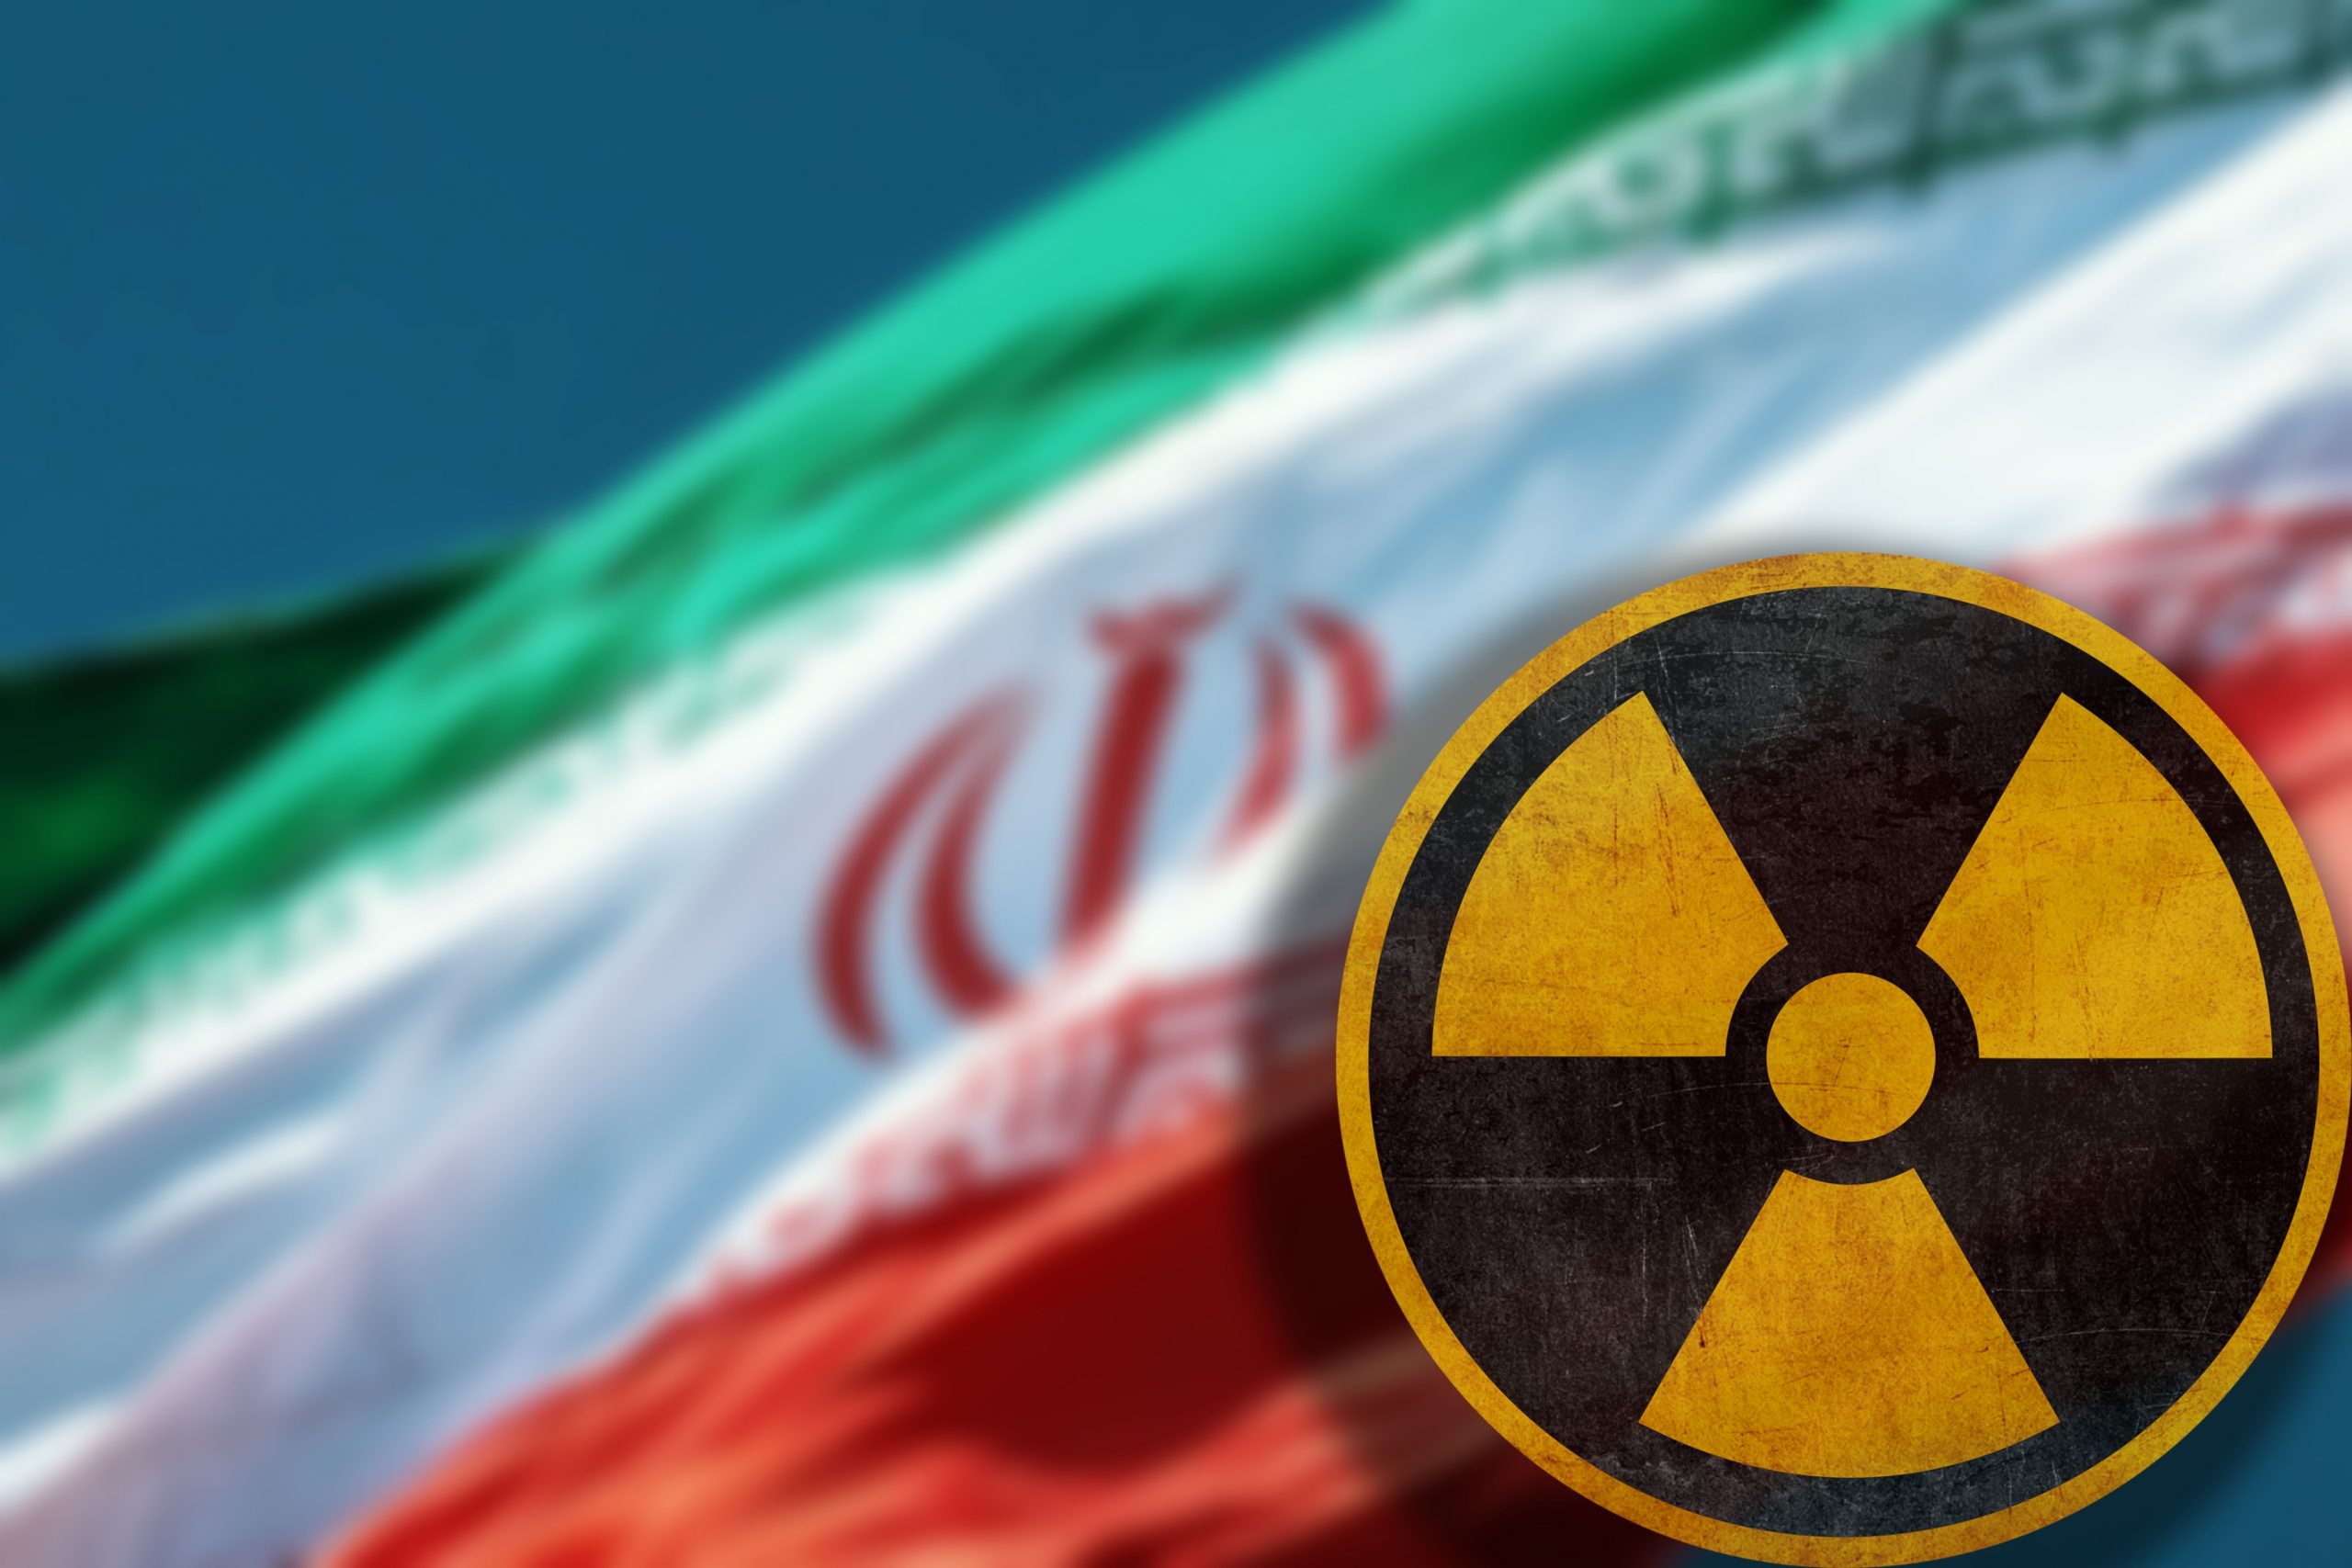 Iran mampu produksi bom atom tapi pilih untuk tidak melakukannya